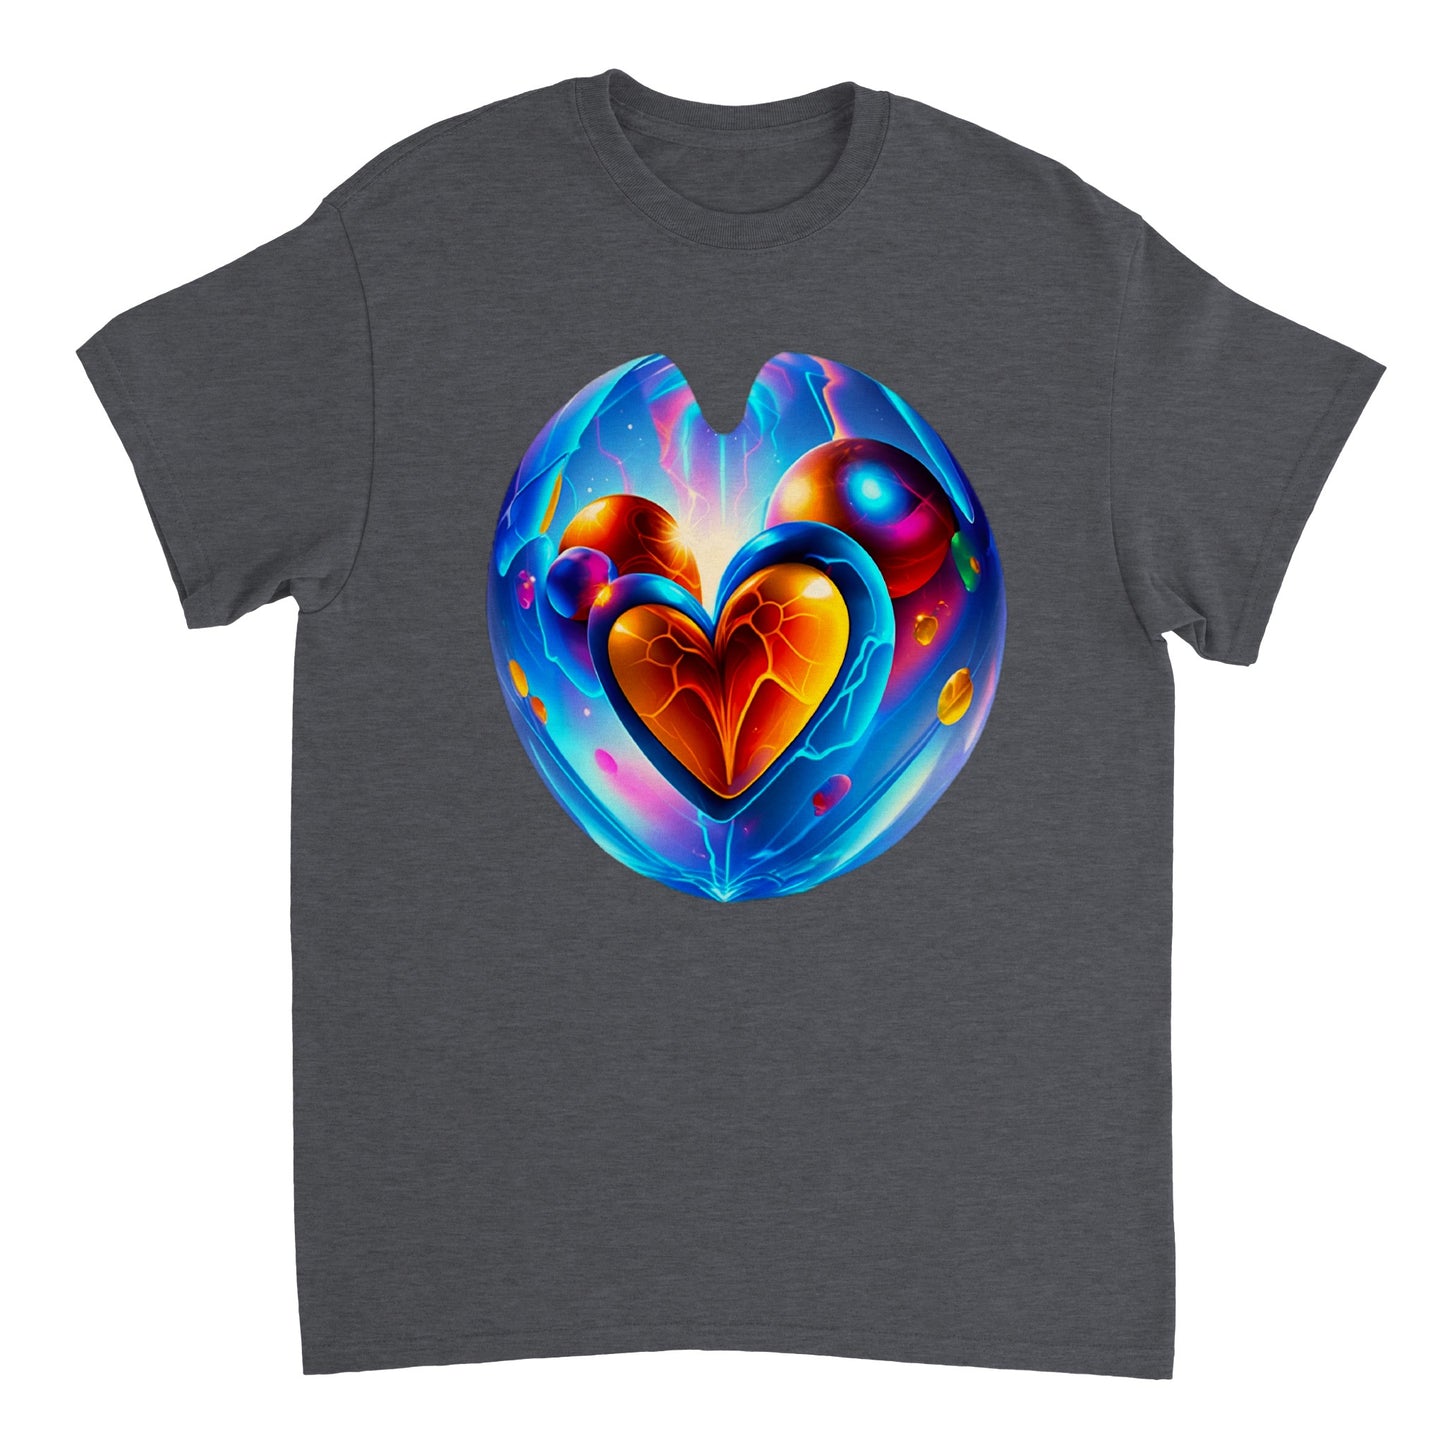 Love Heart - Heavyweight Unisex Crewneck T-shirt 106